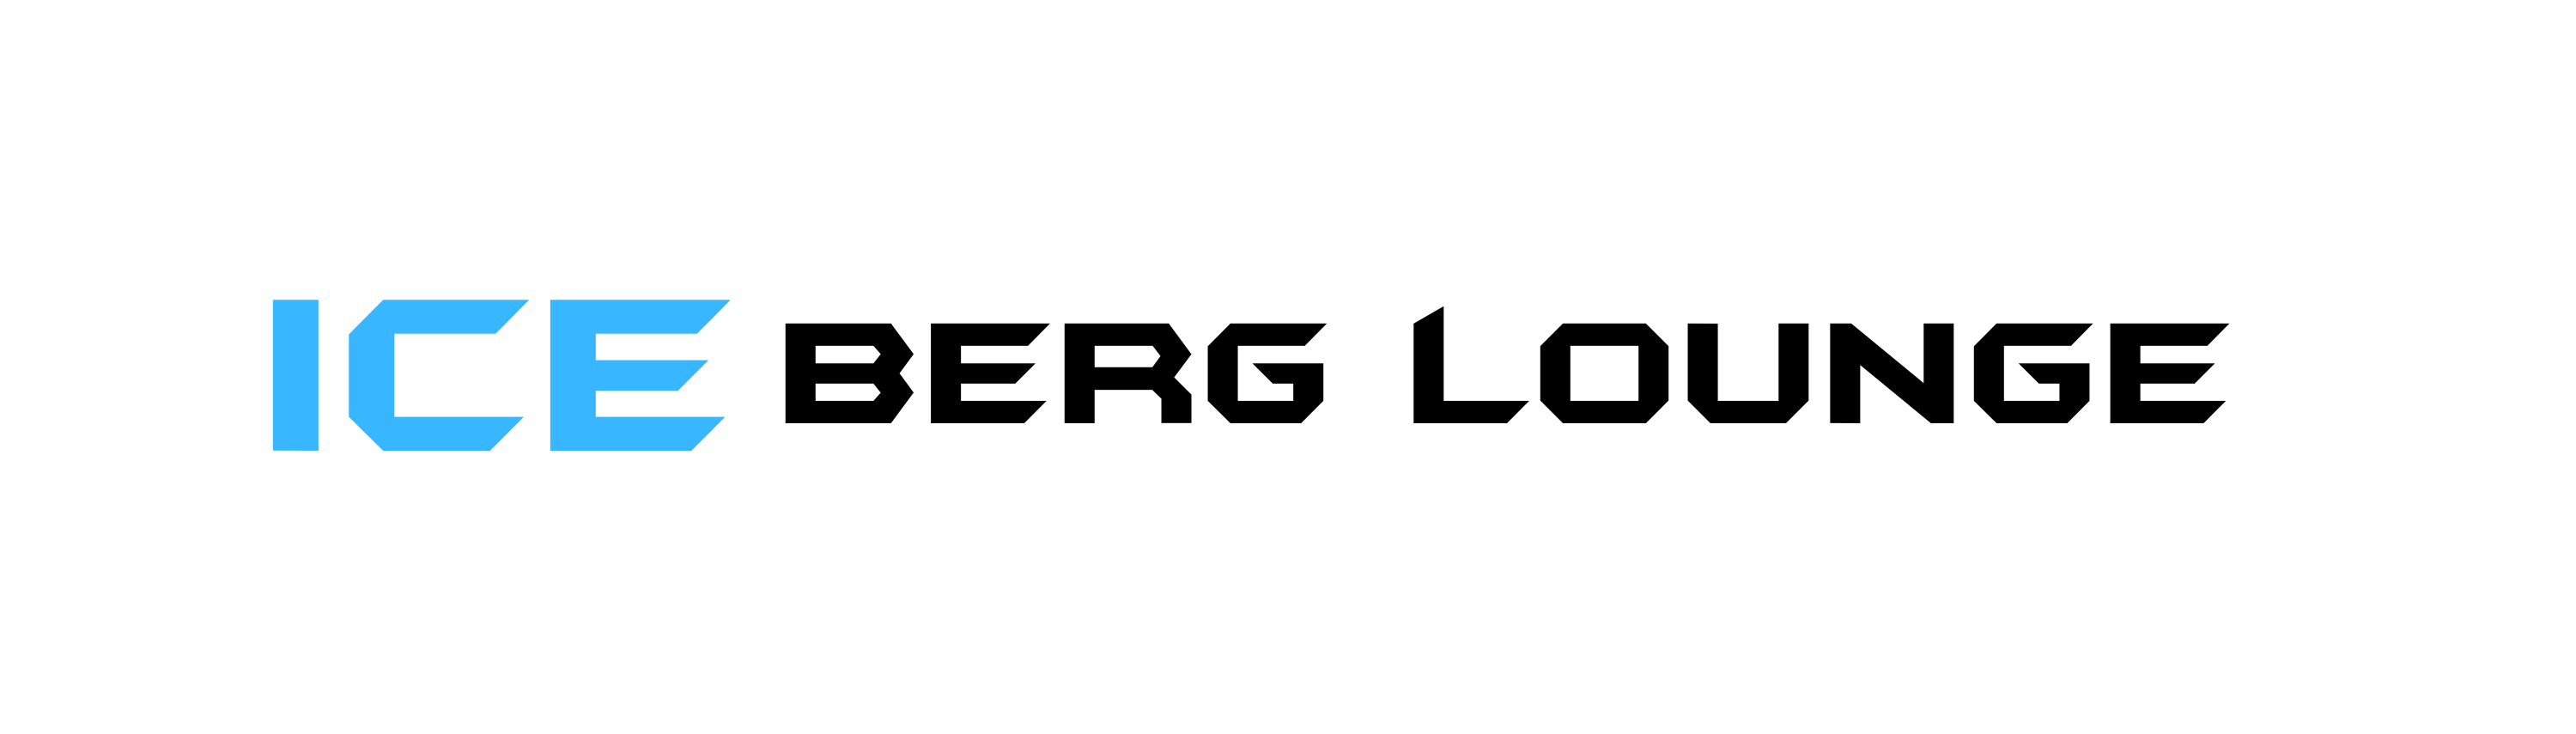 Ice Berg Lounge Logo